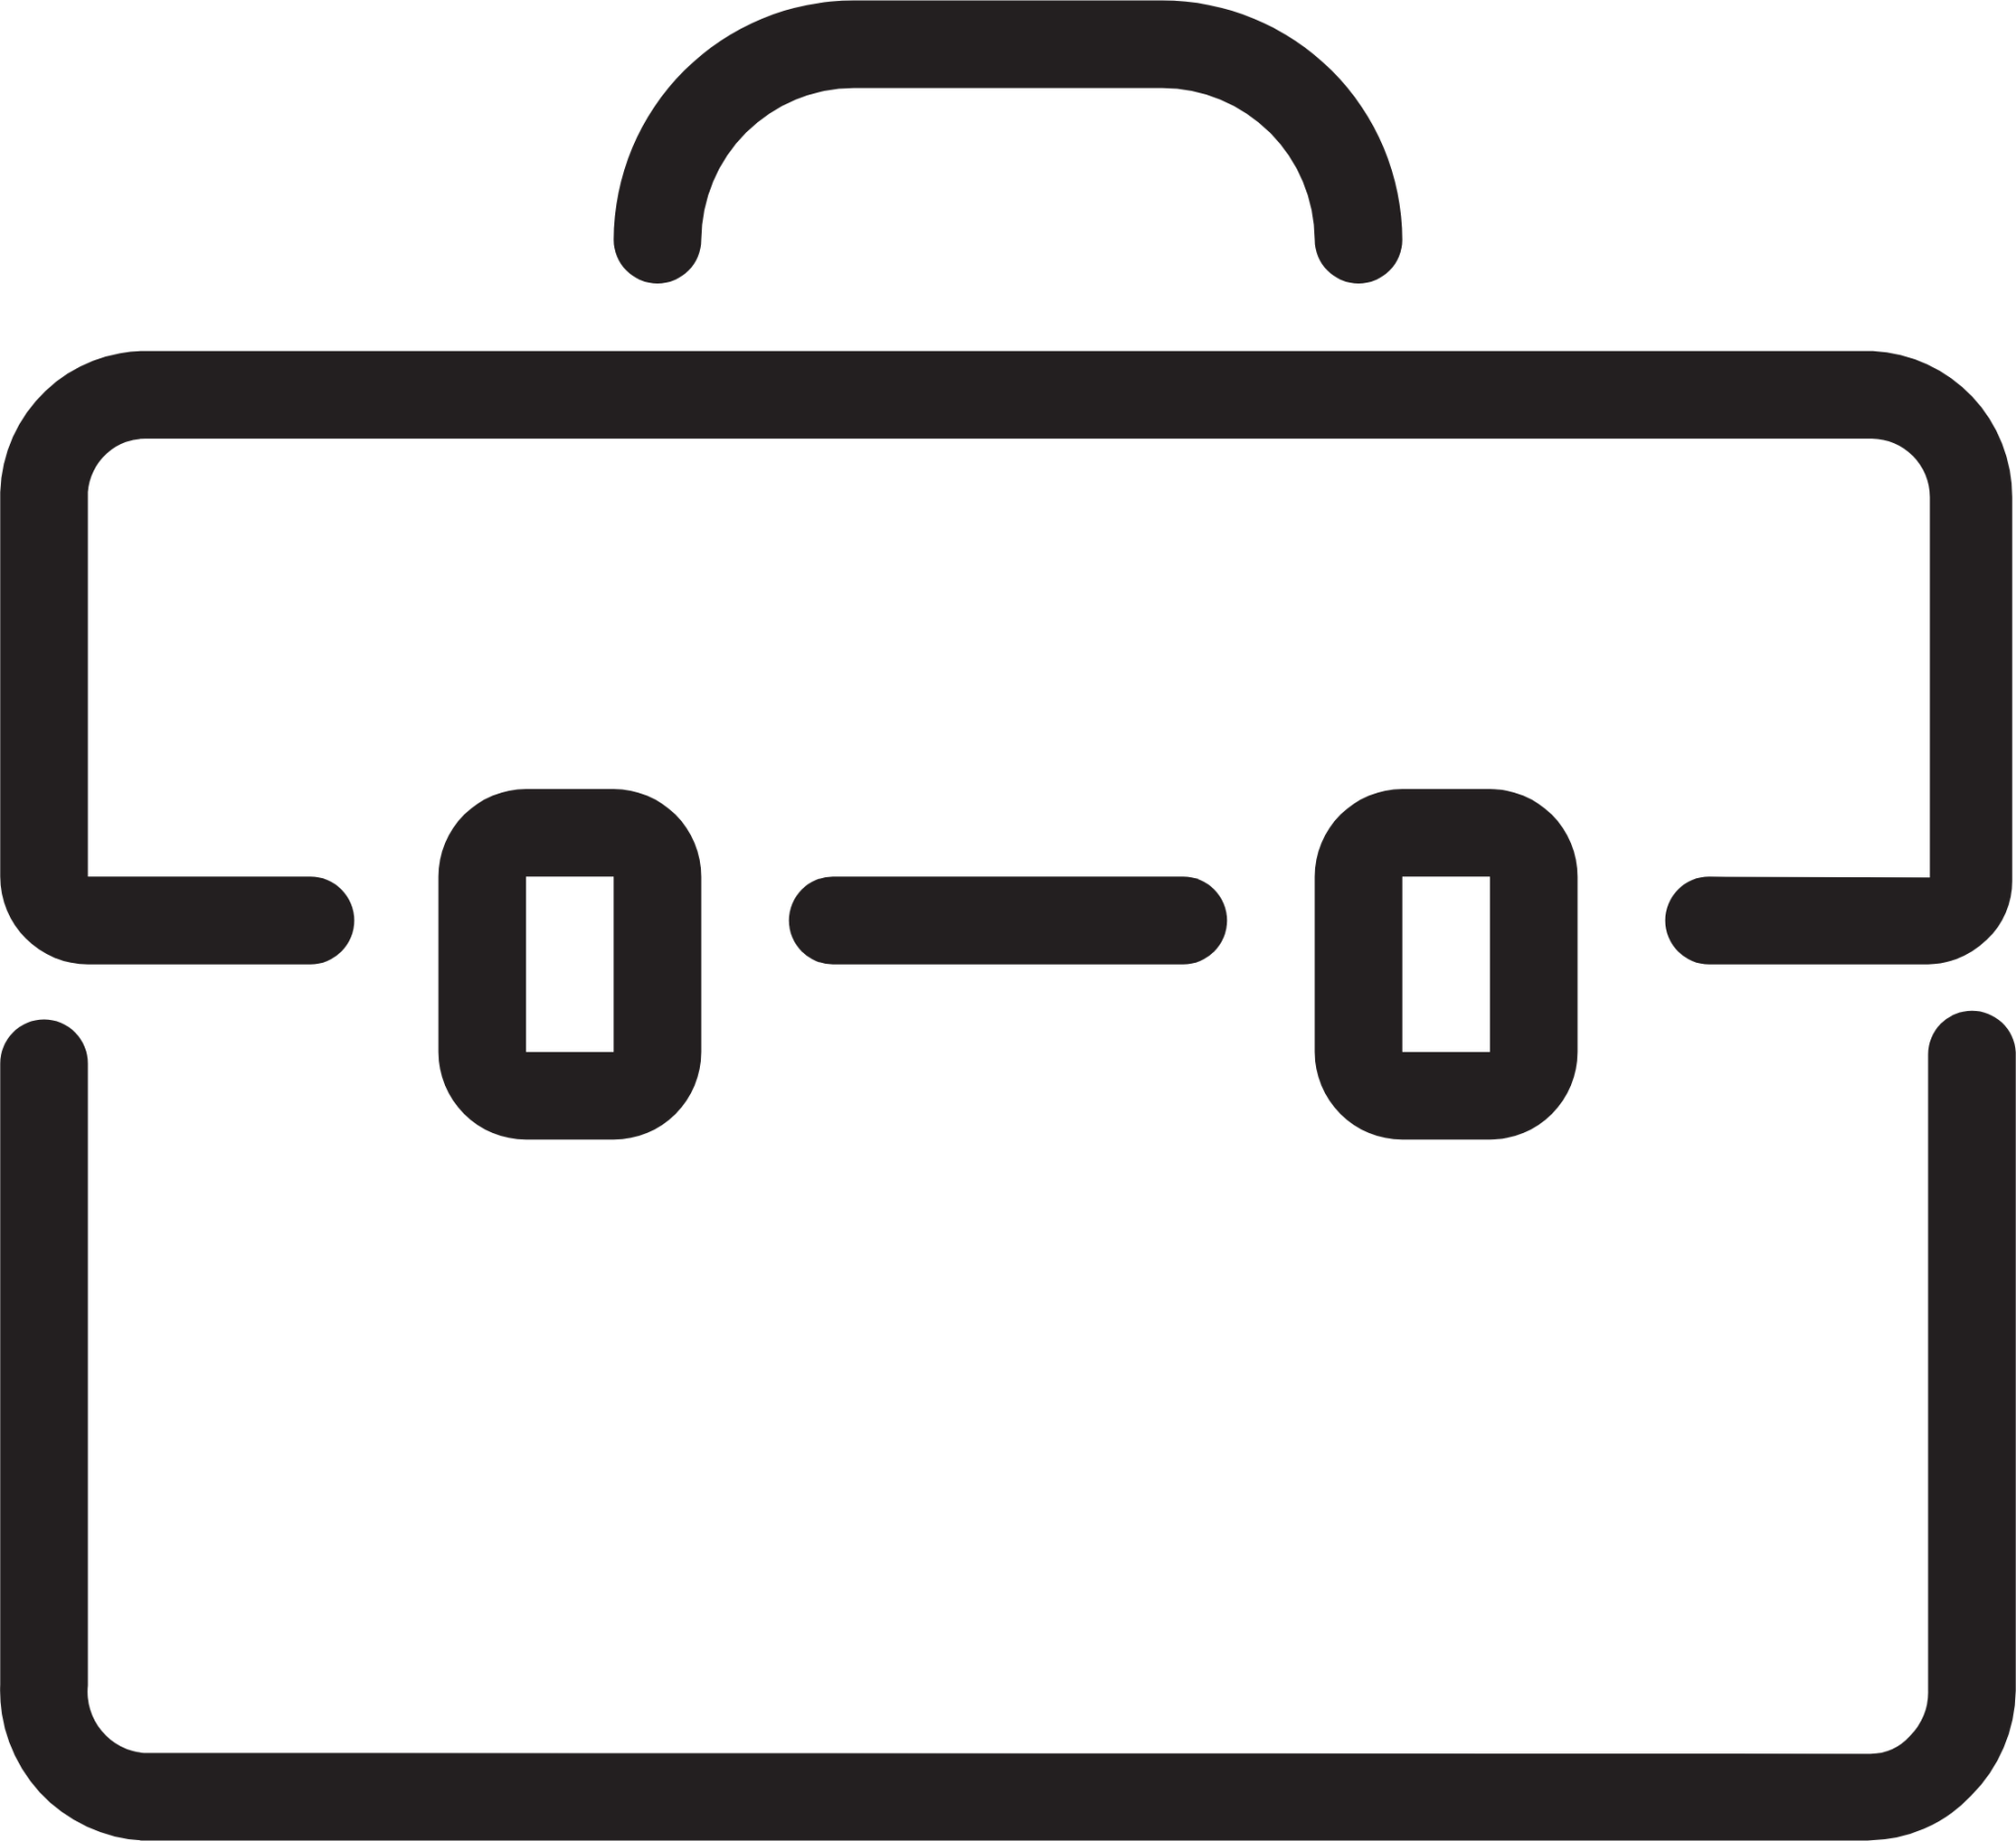 briefcase symbol